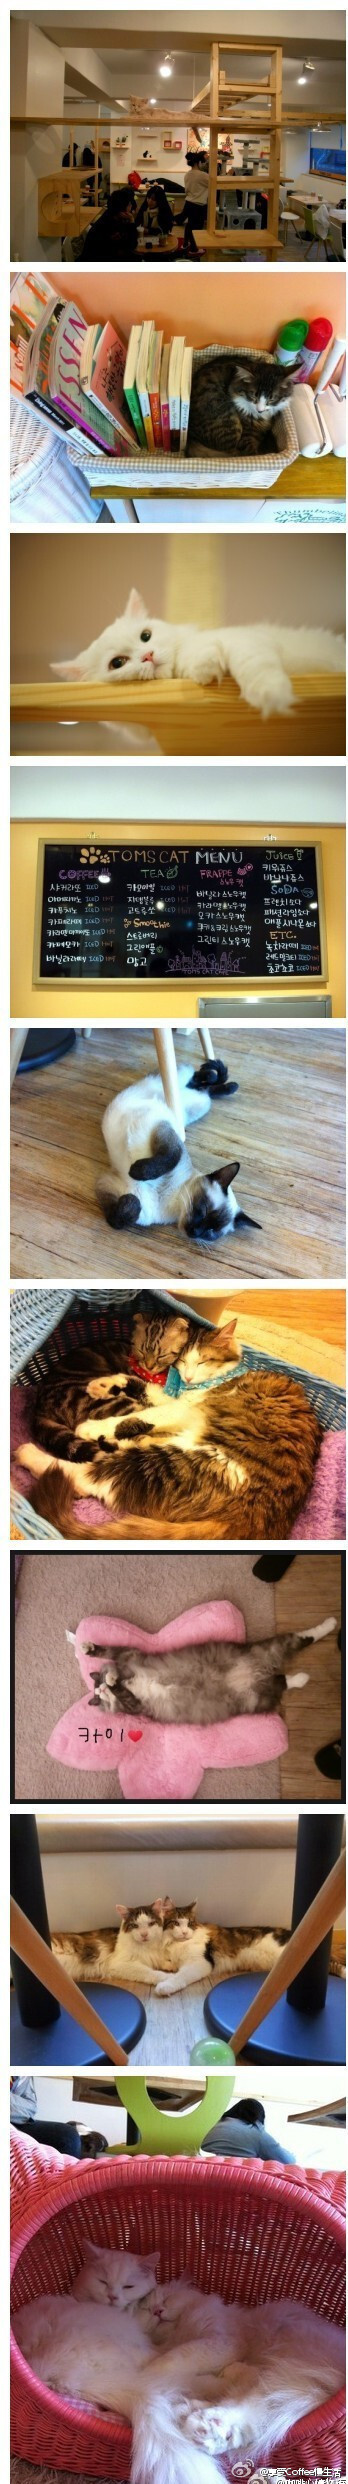 世界各地都有猫咪咖啡馆的风潮，而在韩国首尔的弘大，就属这间「Toms Cat」(汤姆猫咖啡屋)最有欢迎。店里的猫会依项圈颜色告诉你「可抱、可摸」或是「看看就好」。咖啡店里猫跳台跟猫床的数量可是比人坐的椅子还要多…